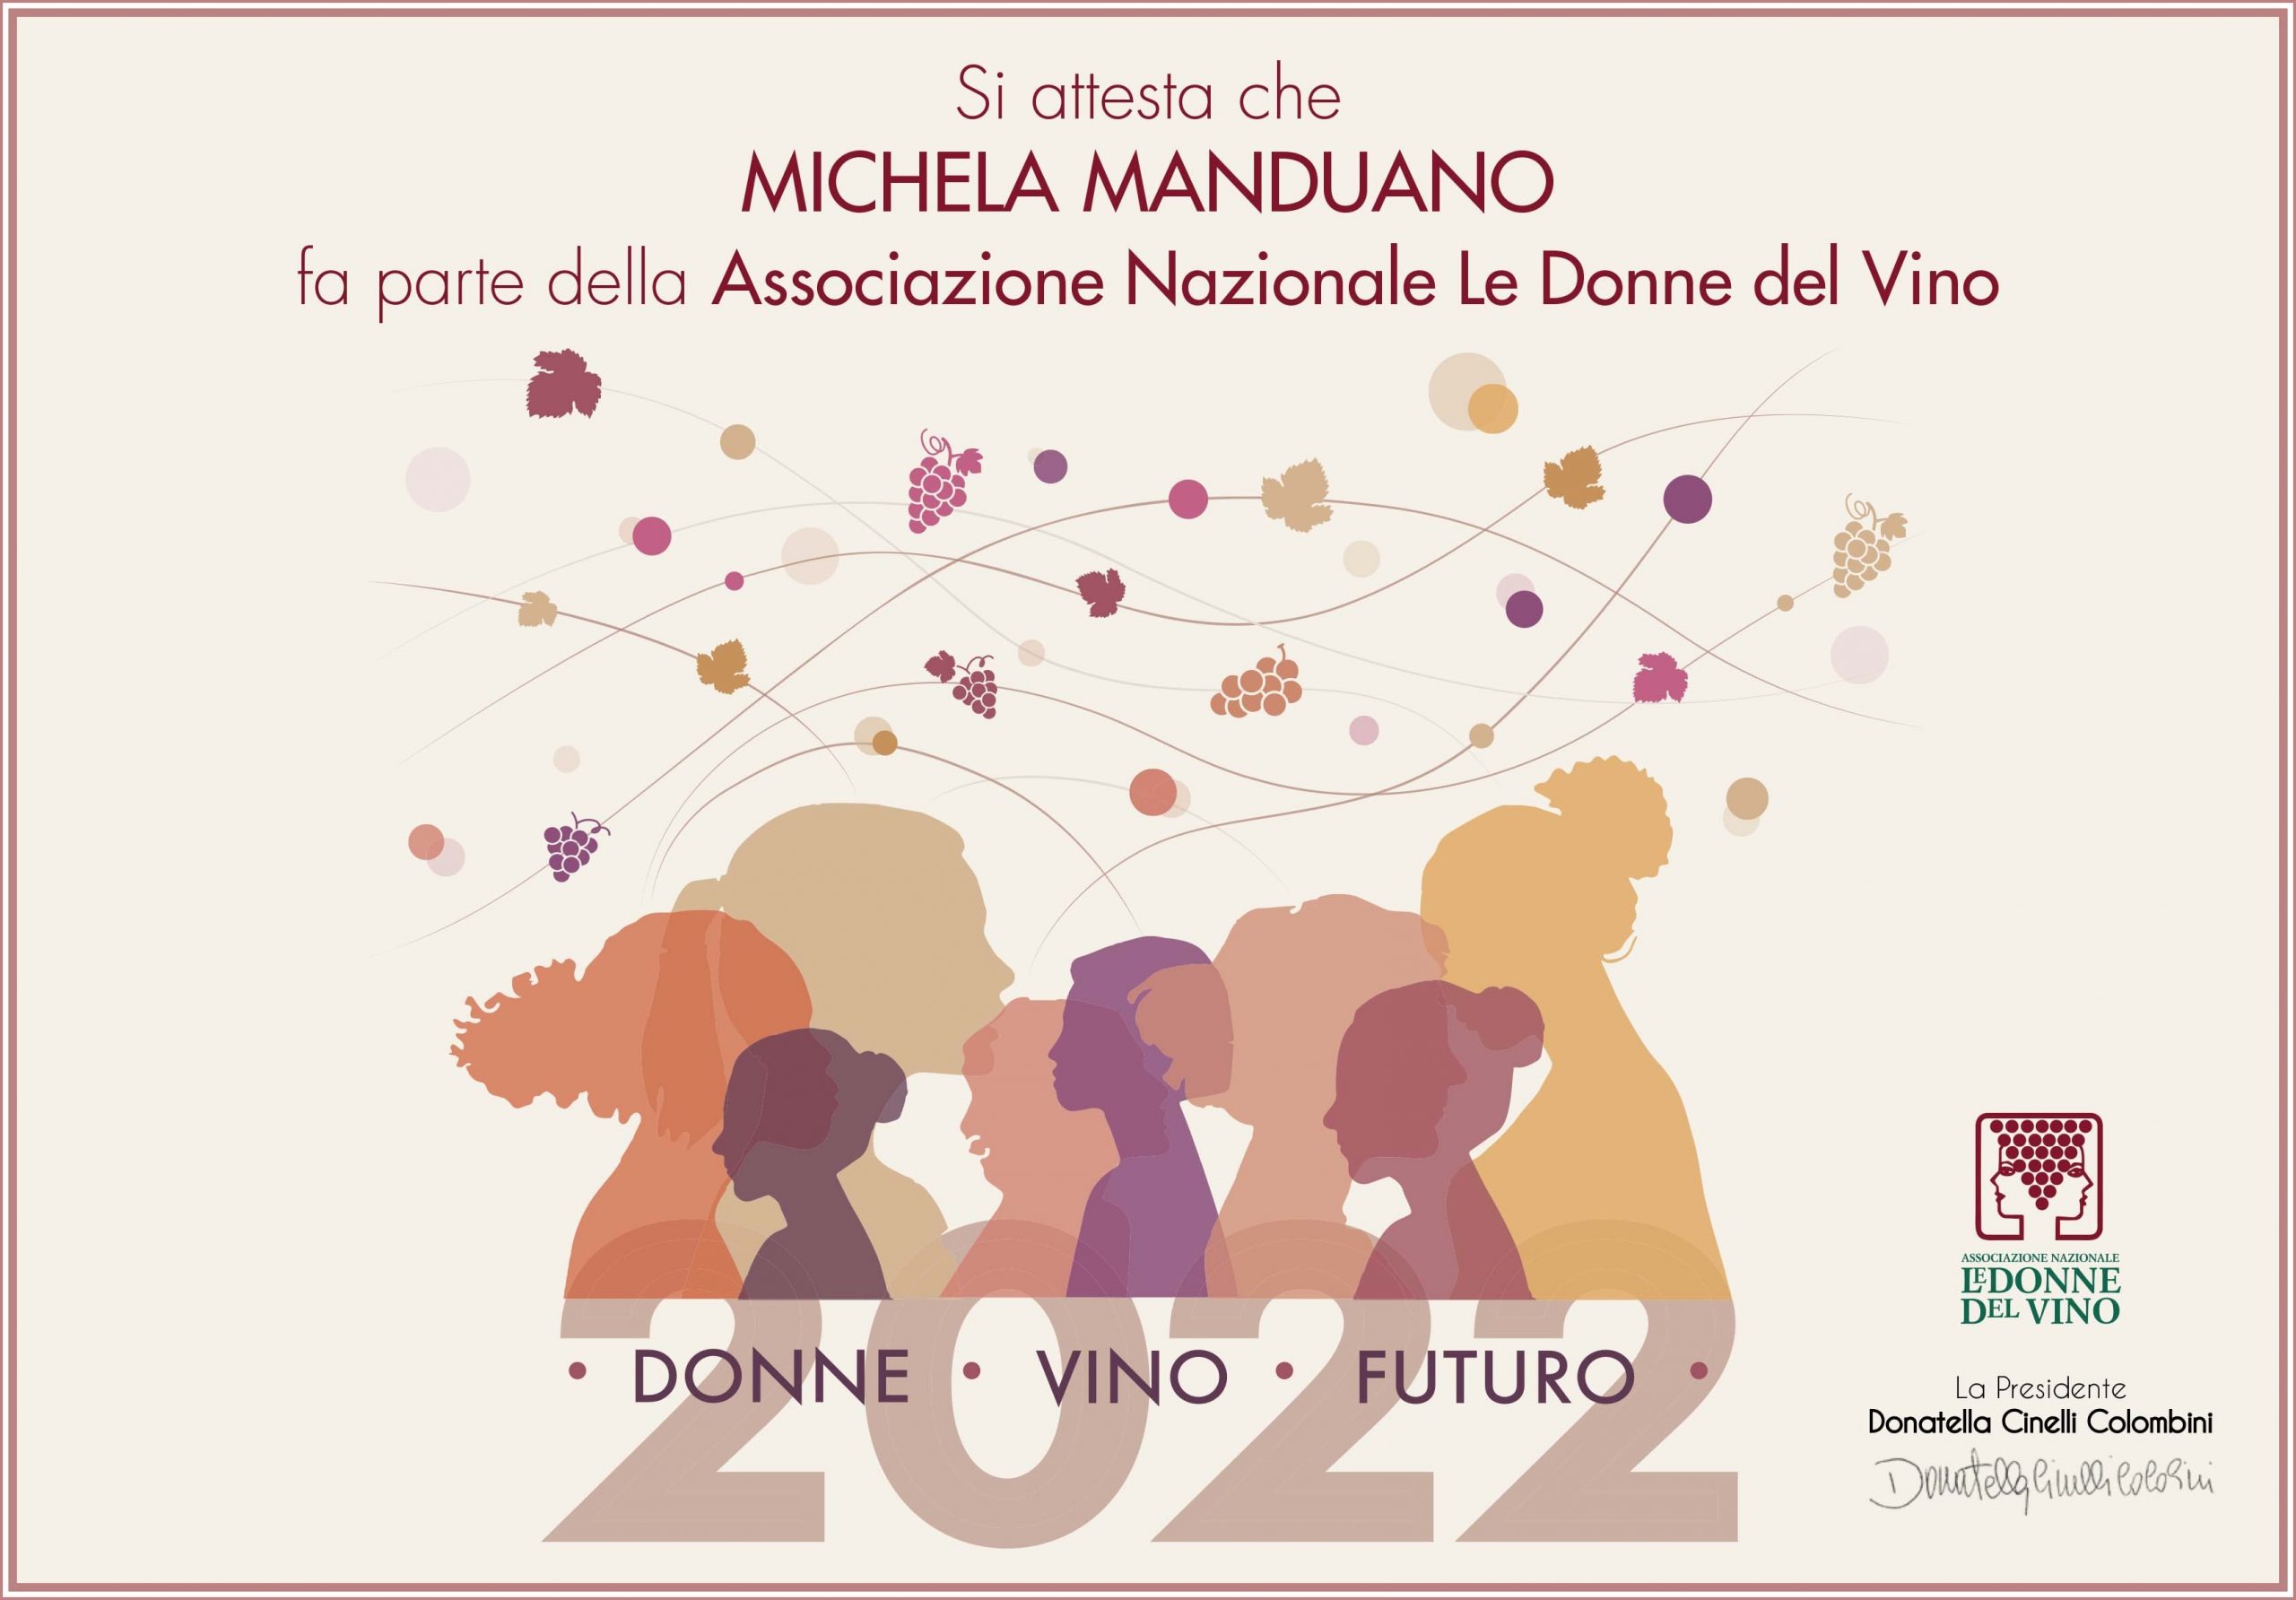 Michela Manduano è entrata a far parte dell’Associazione Donne del Vino